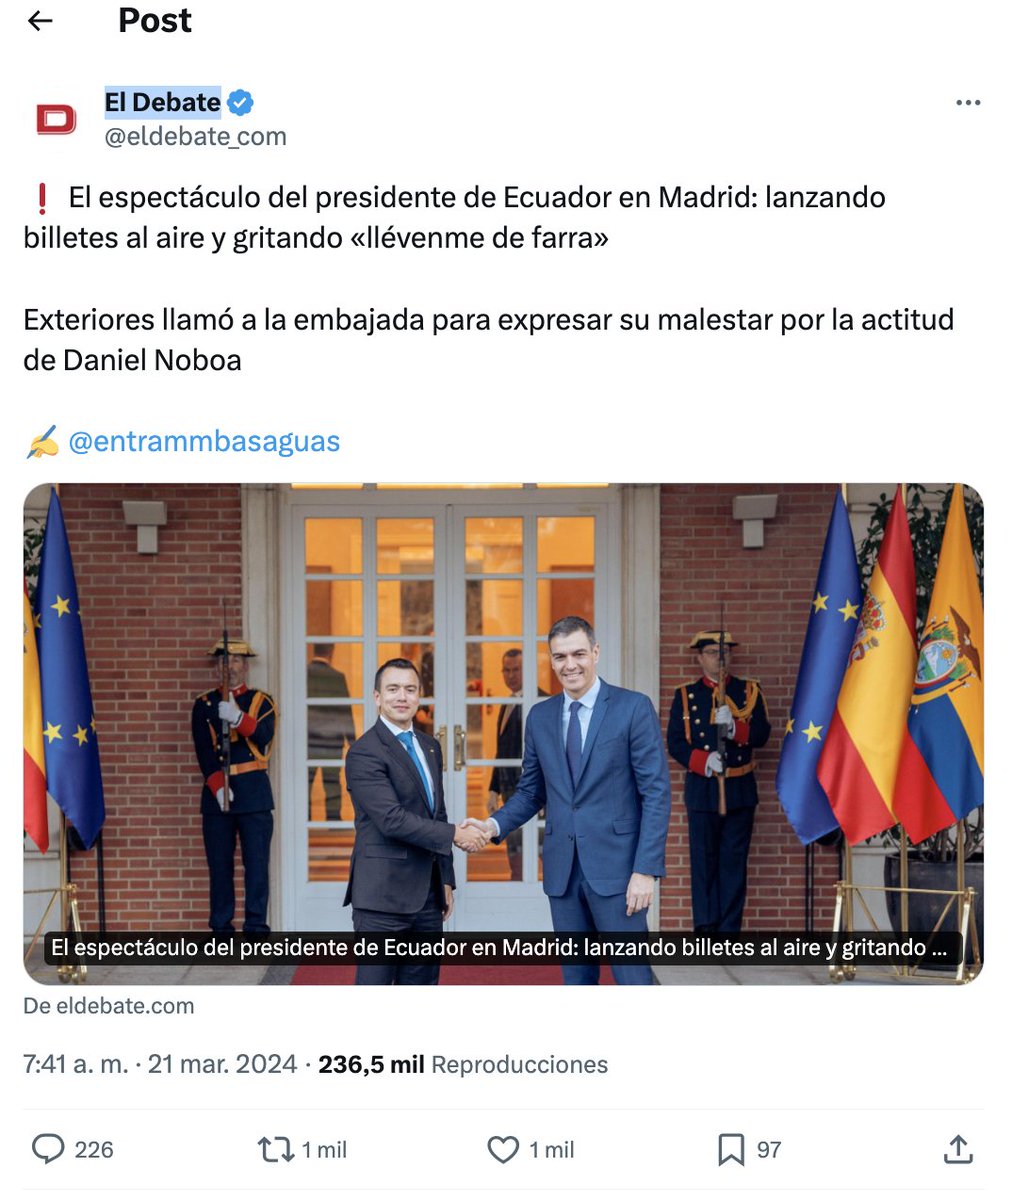 El curuchupismo del periodismo ecuatoriano ('Farra de @DanielNoboaOk )
#SocialAlert

Eran las 9:15 de la mañana de hoy jueves 21 de marzo y varias cuentas de medios digitales posicionaban el titular: 'El espectáculo del presidente de Ecuador en Madrid: lanzando billetes al aire y